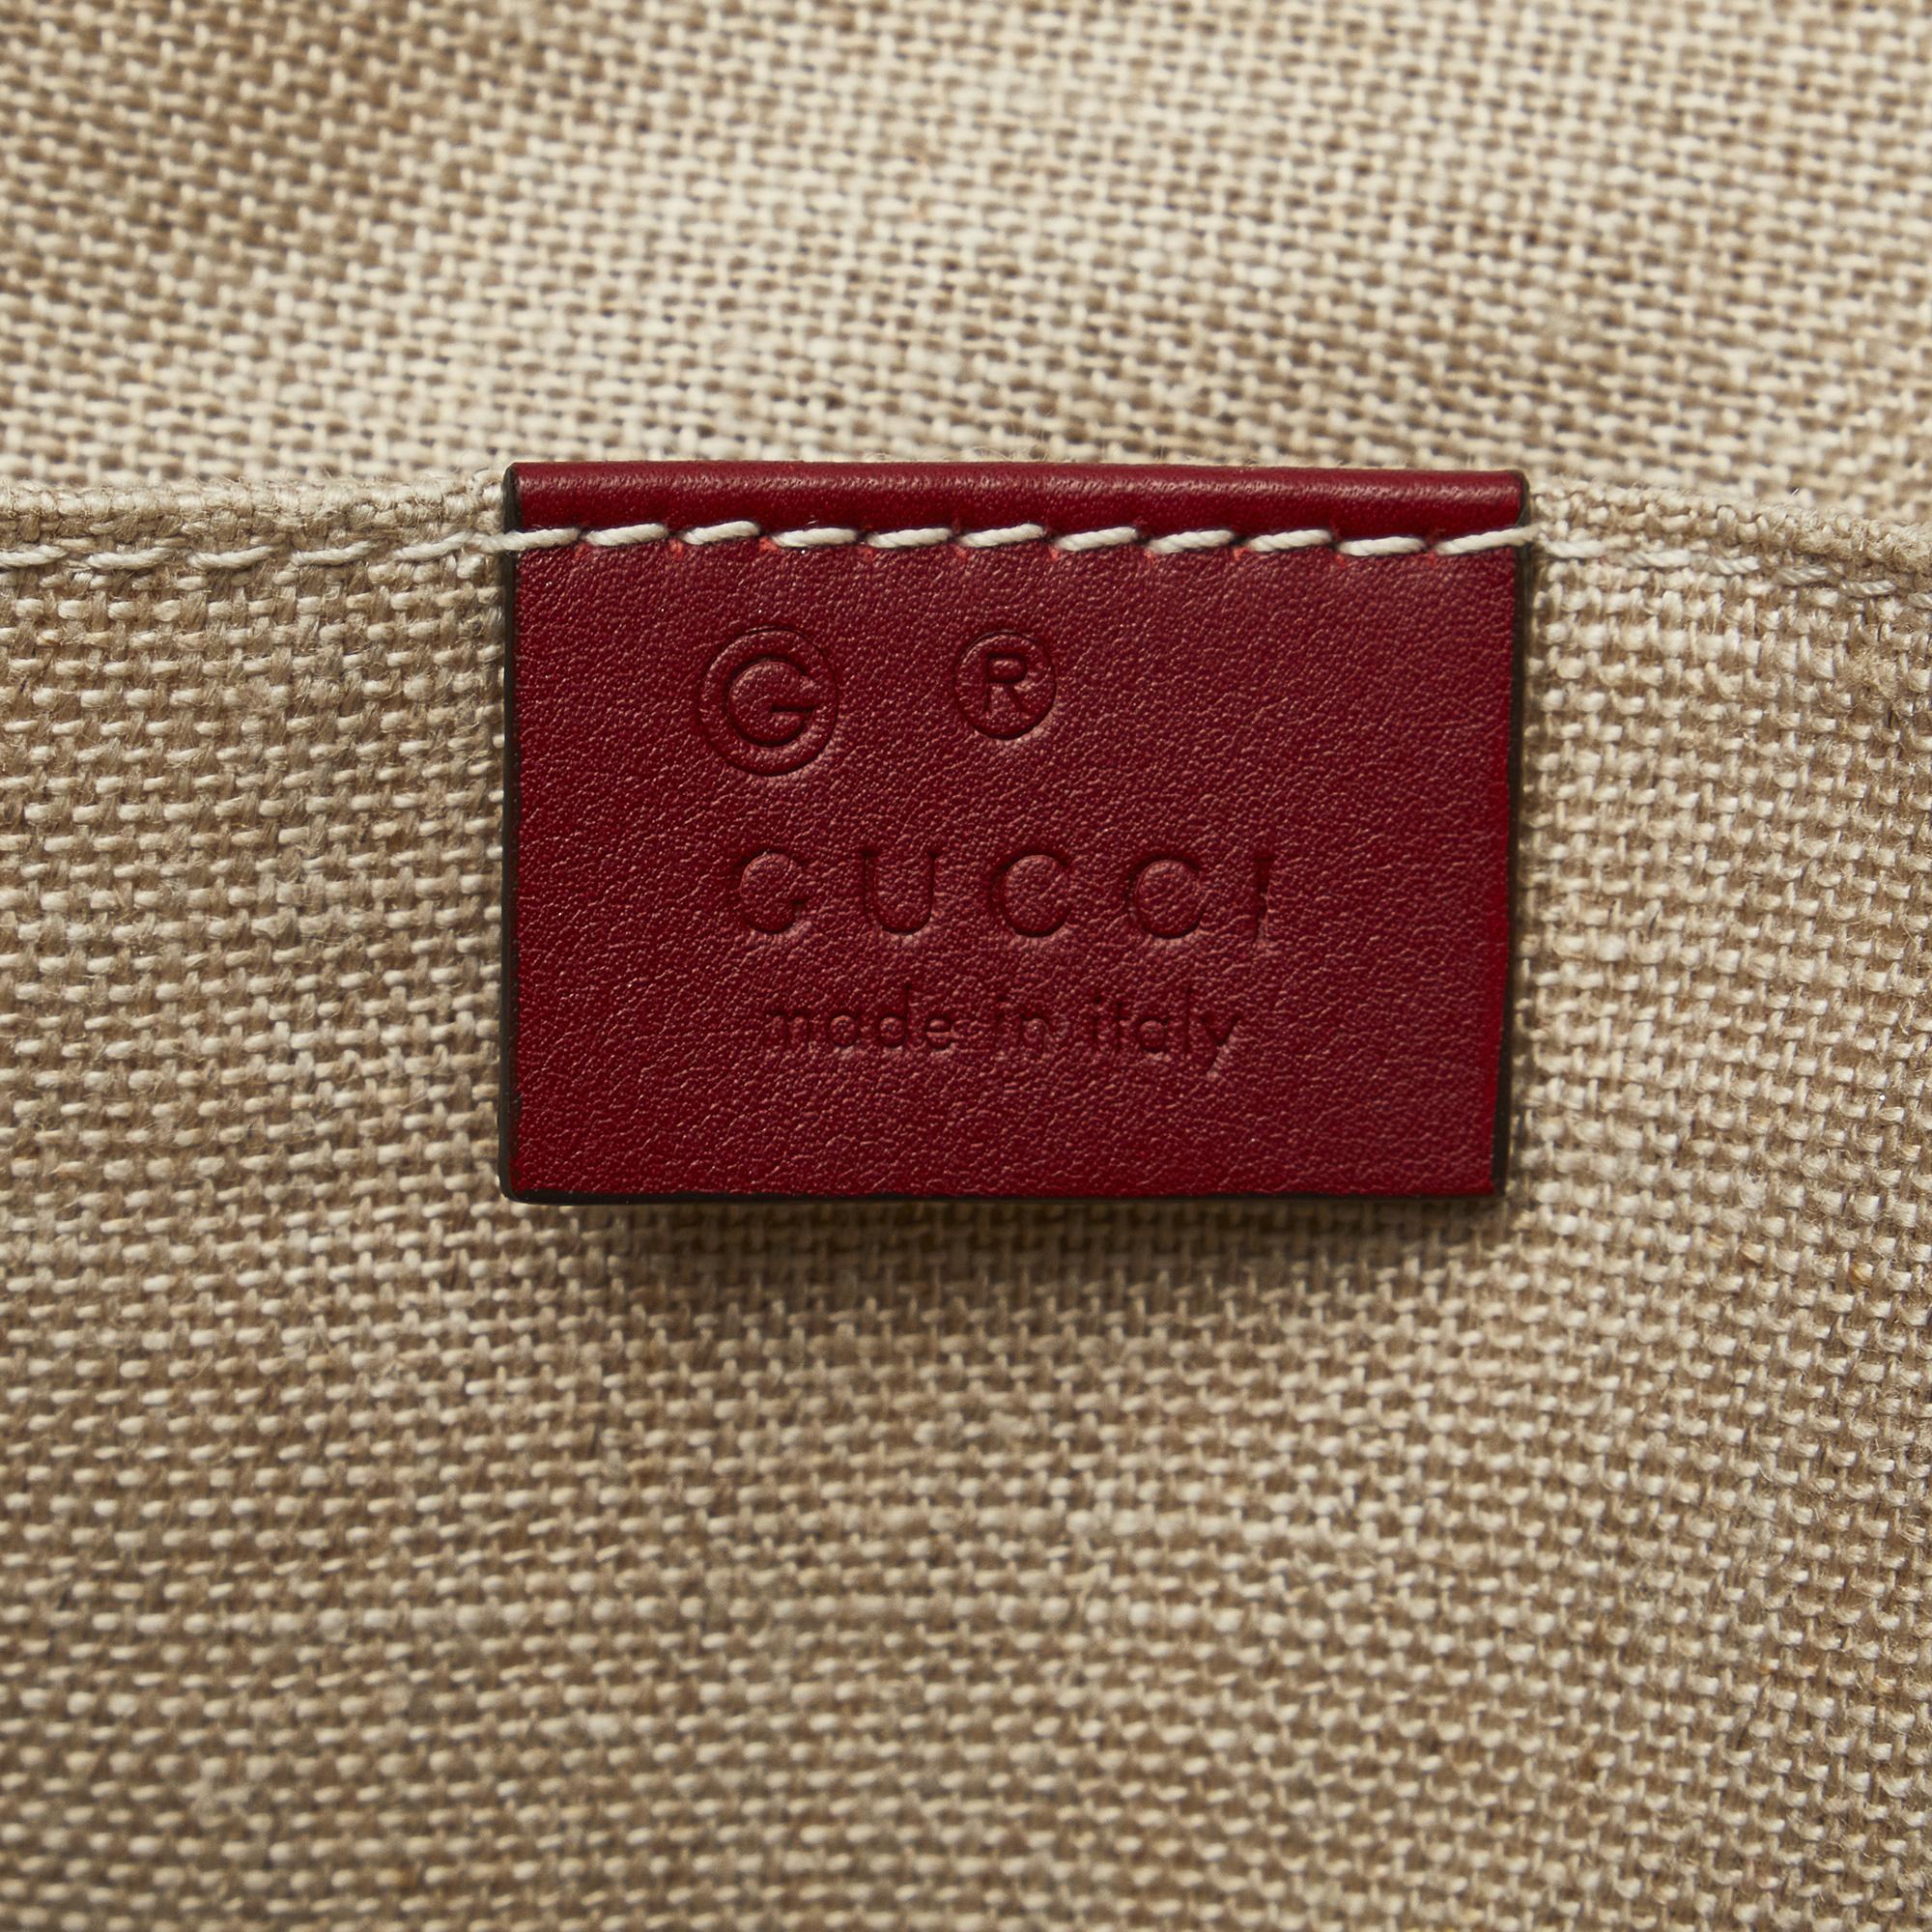 Gucci Red Mini Microguccissima Dome Satchel